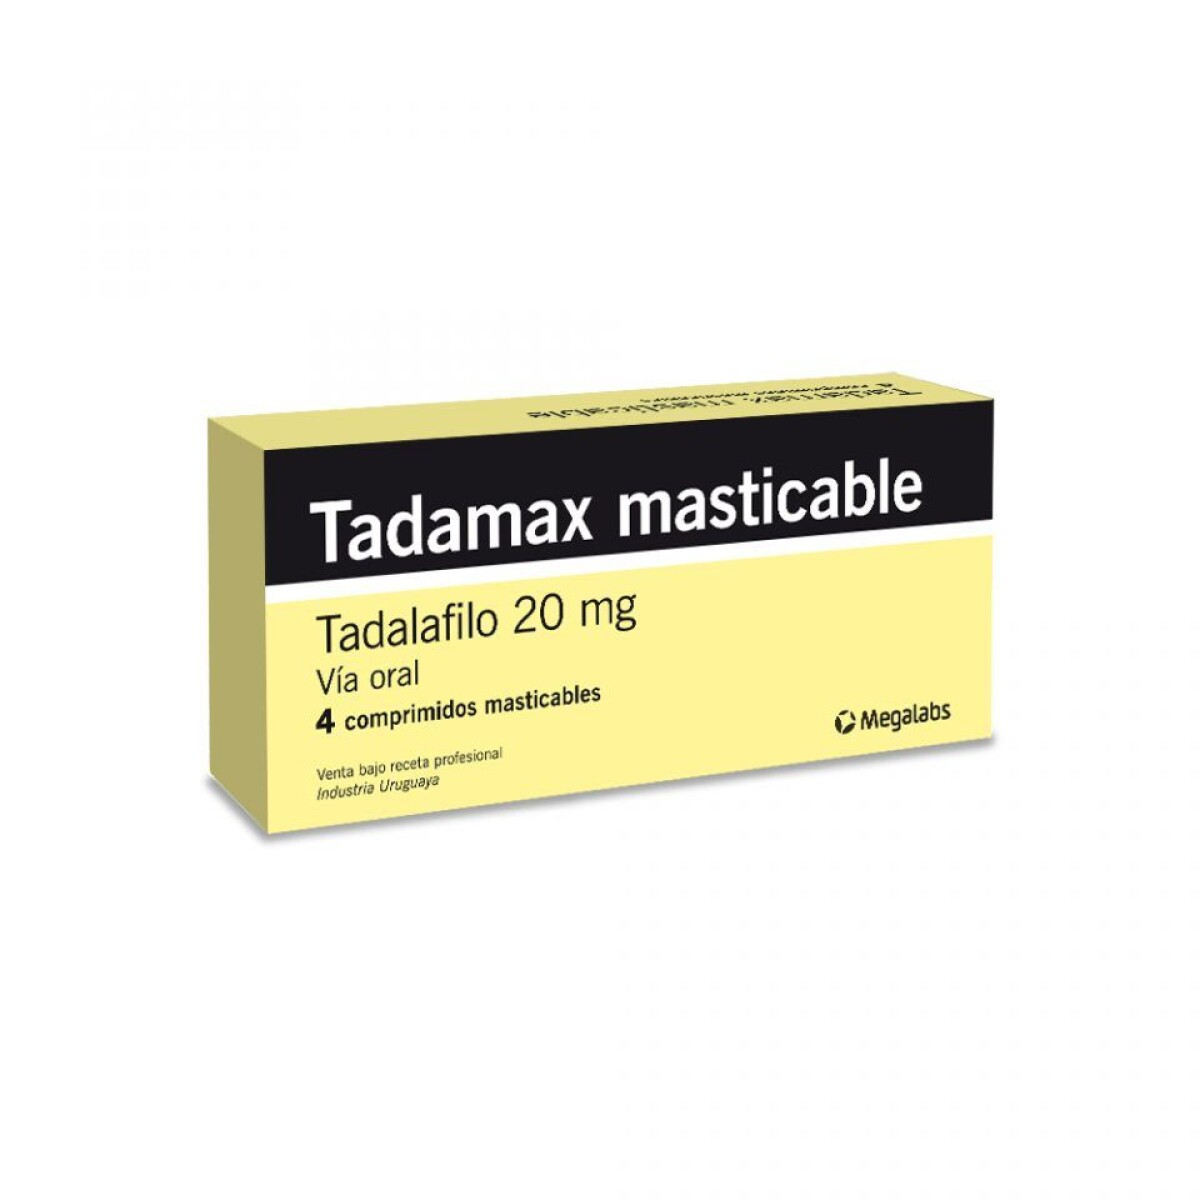 TADAMAX 20 MG 4 COMPRIMIDOS MASTICABLES 